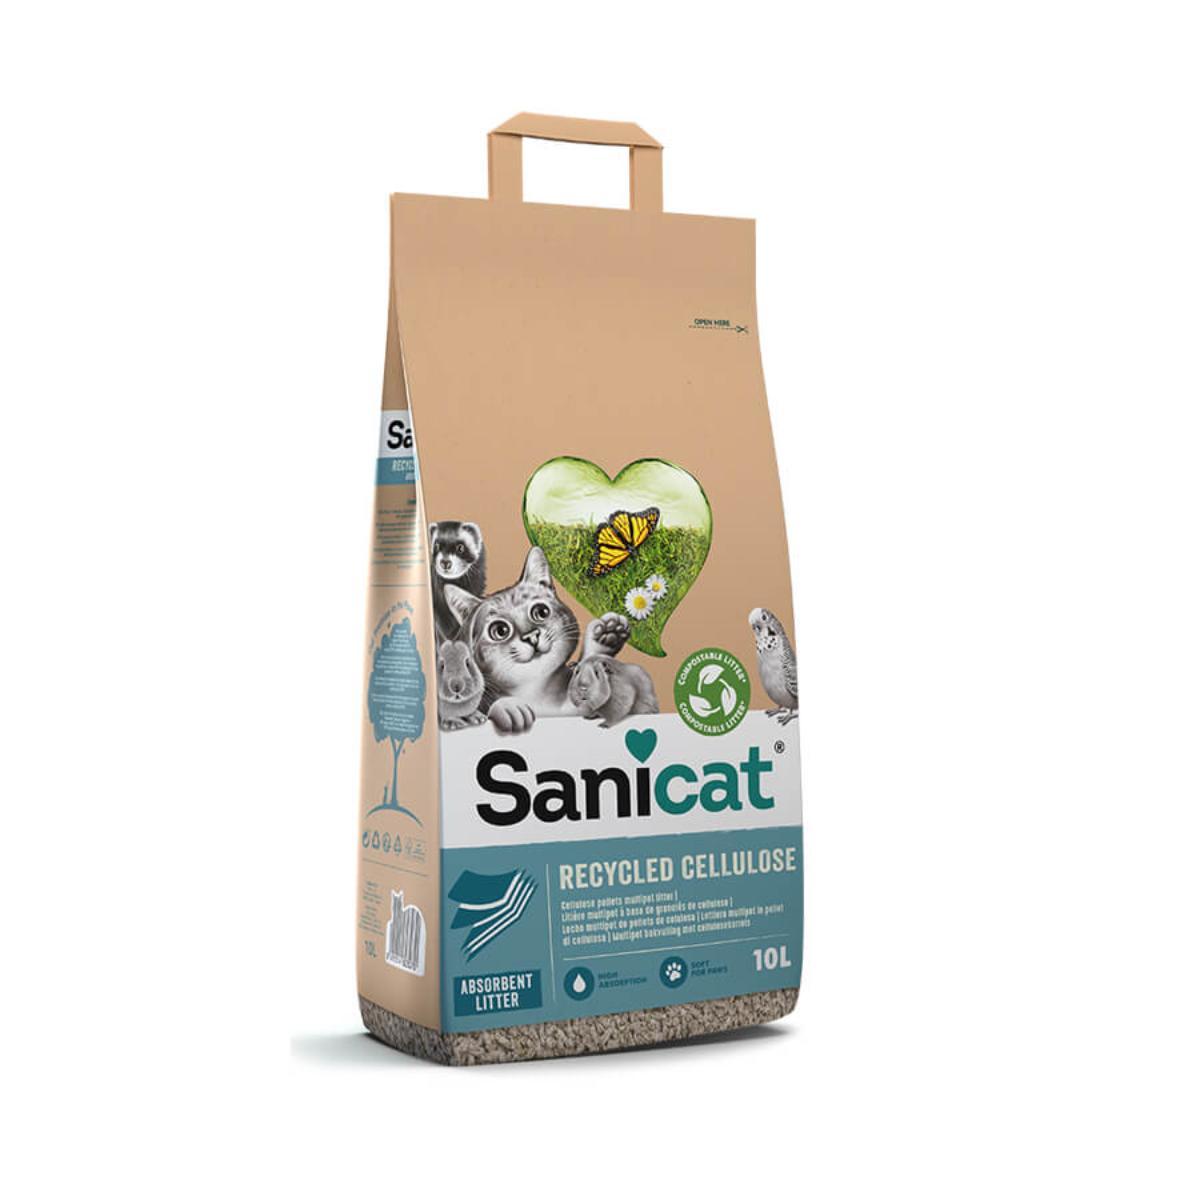 SANICAT Recycled Cellulose, neparfumat, așternut igienic pisici, peleți, celuloza, neaglomerant, ecologic, biodegradabil, 20l